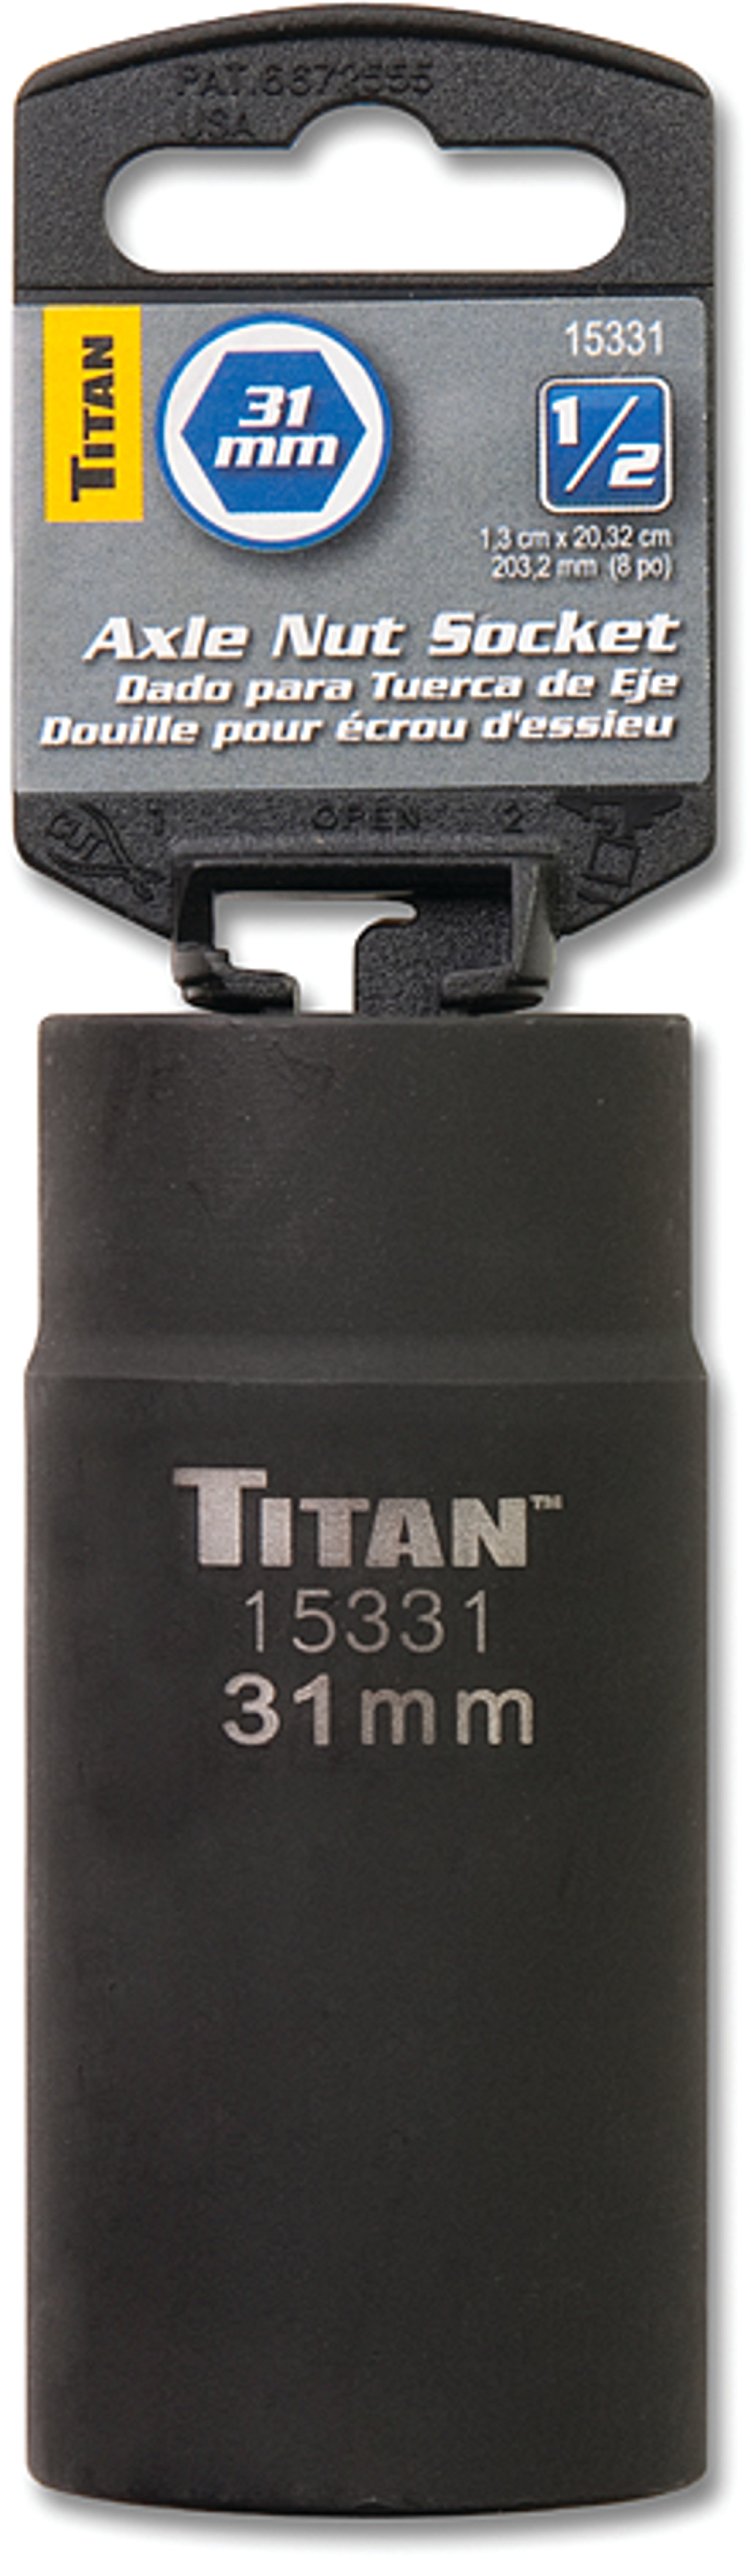  [AUSTRALIA] - Titan 15331 31mm 1/2" Drive 6 Point Axle Nut Socket